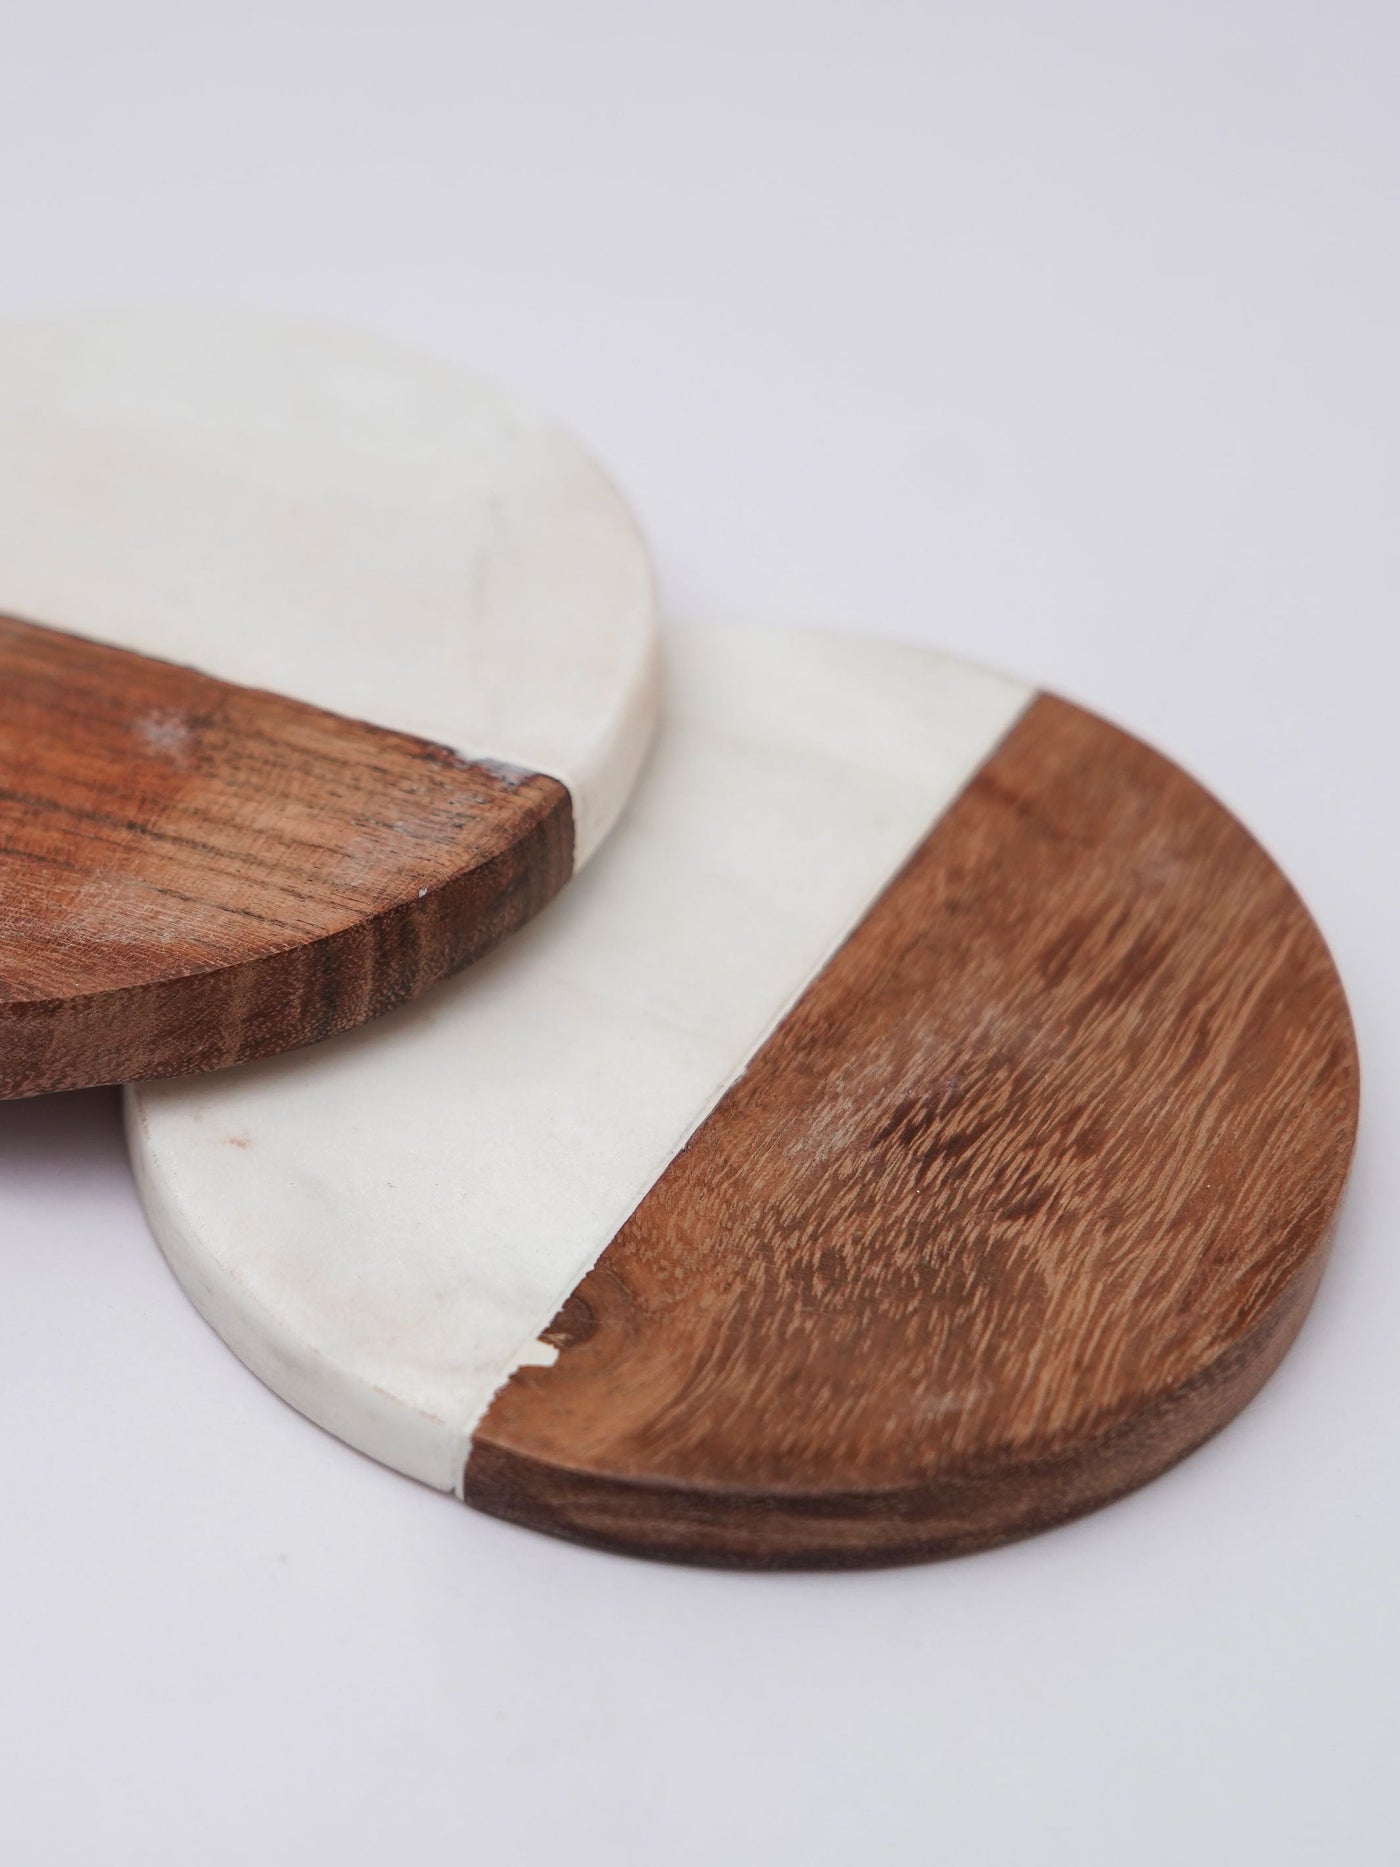 Round Coaster Set of 2 - White Marble & Wood